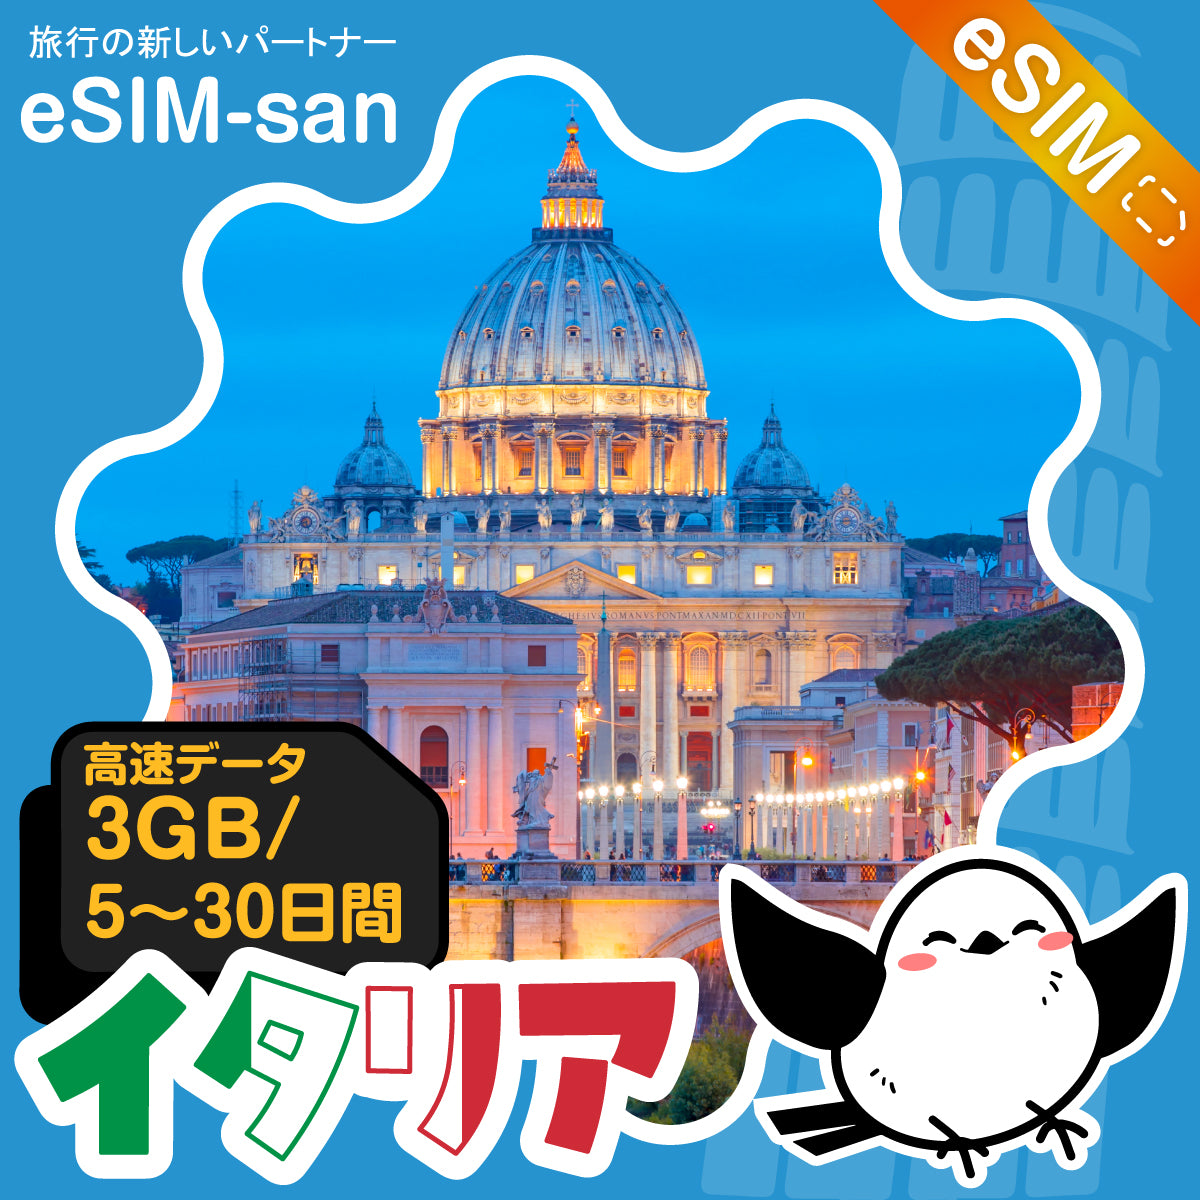 イタリアeSIMの3GB/dayプラン画像_eSIM-san